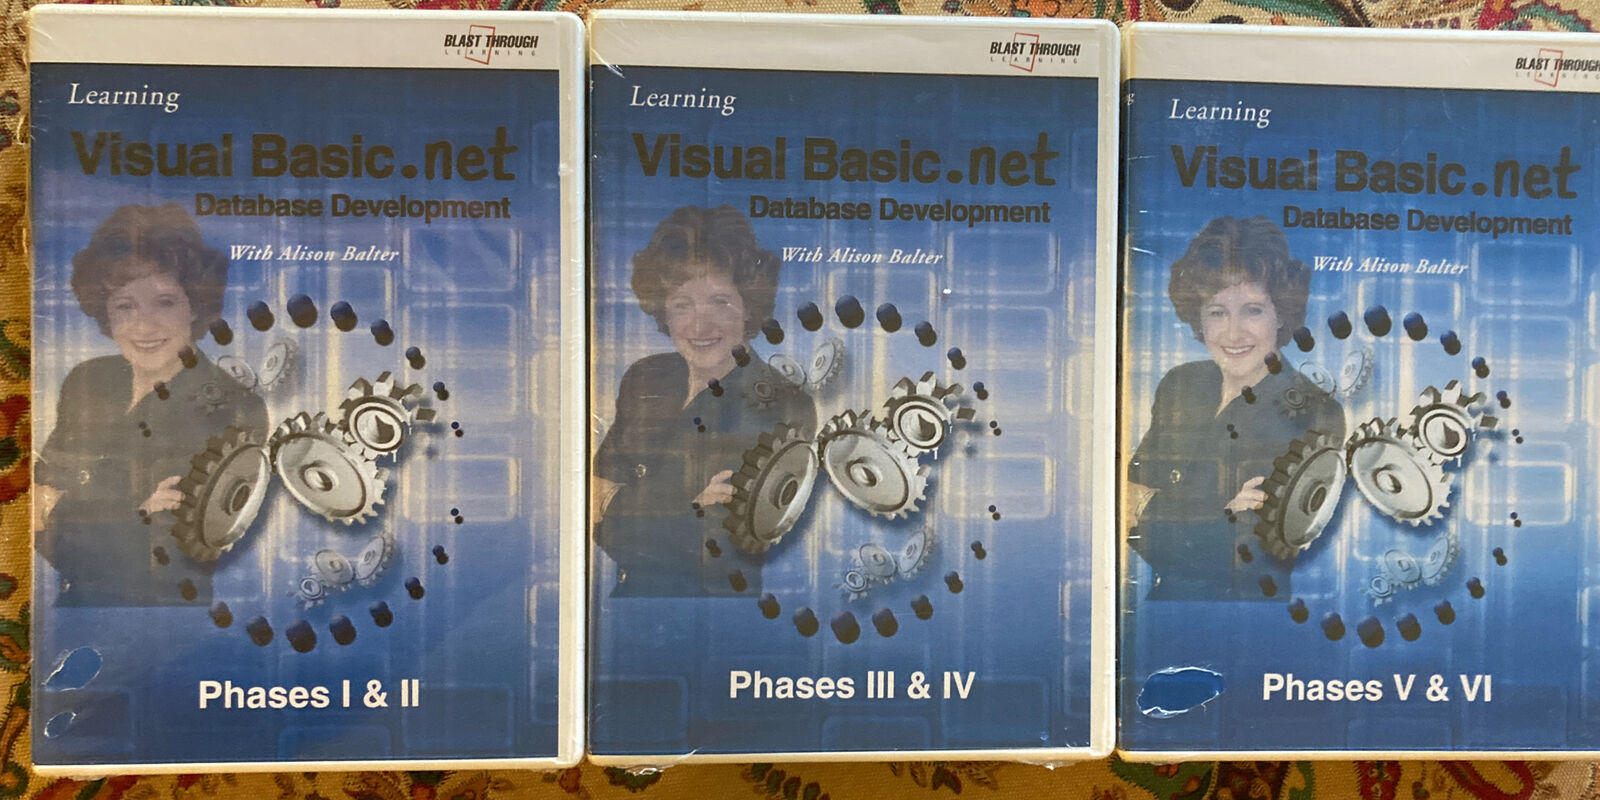 Learning Visual Basic.Net CD Desktop Development Course Phases 1-6 - Brand New